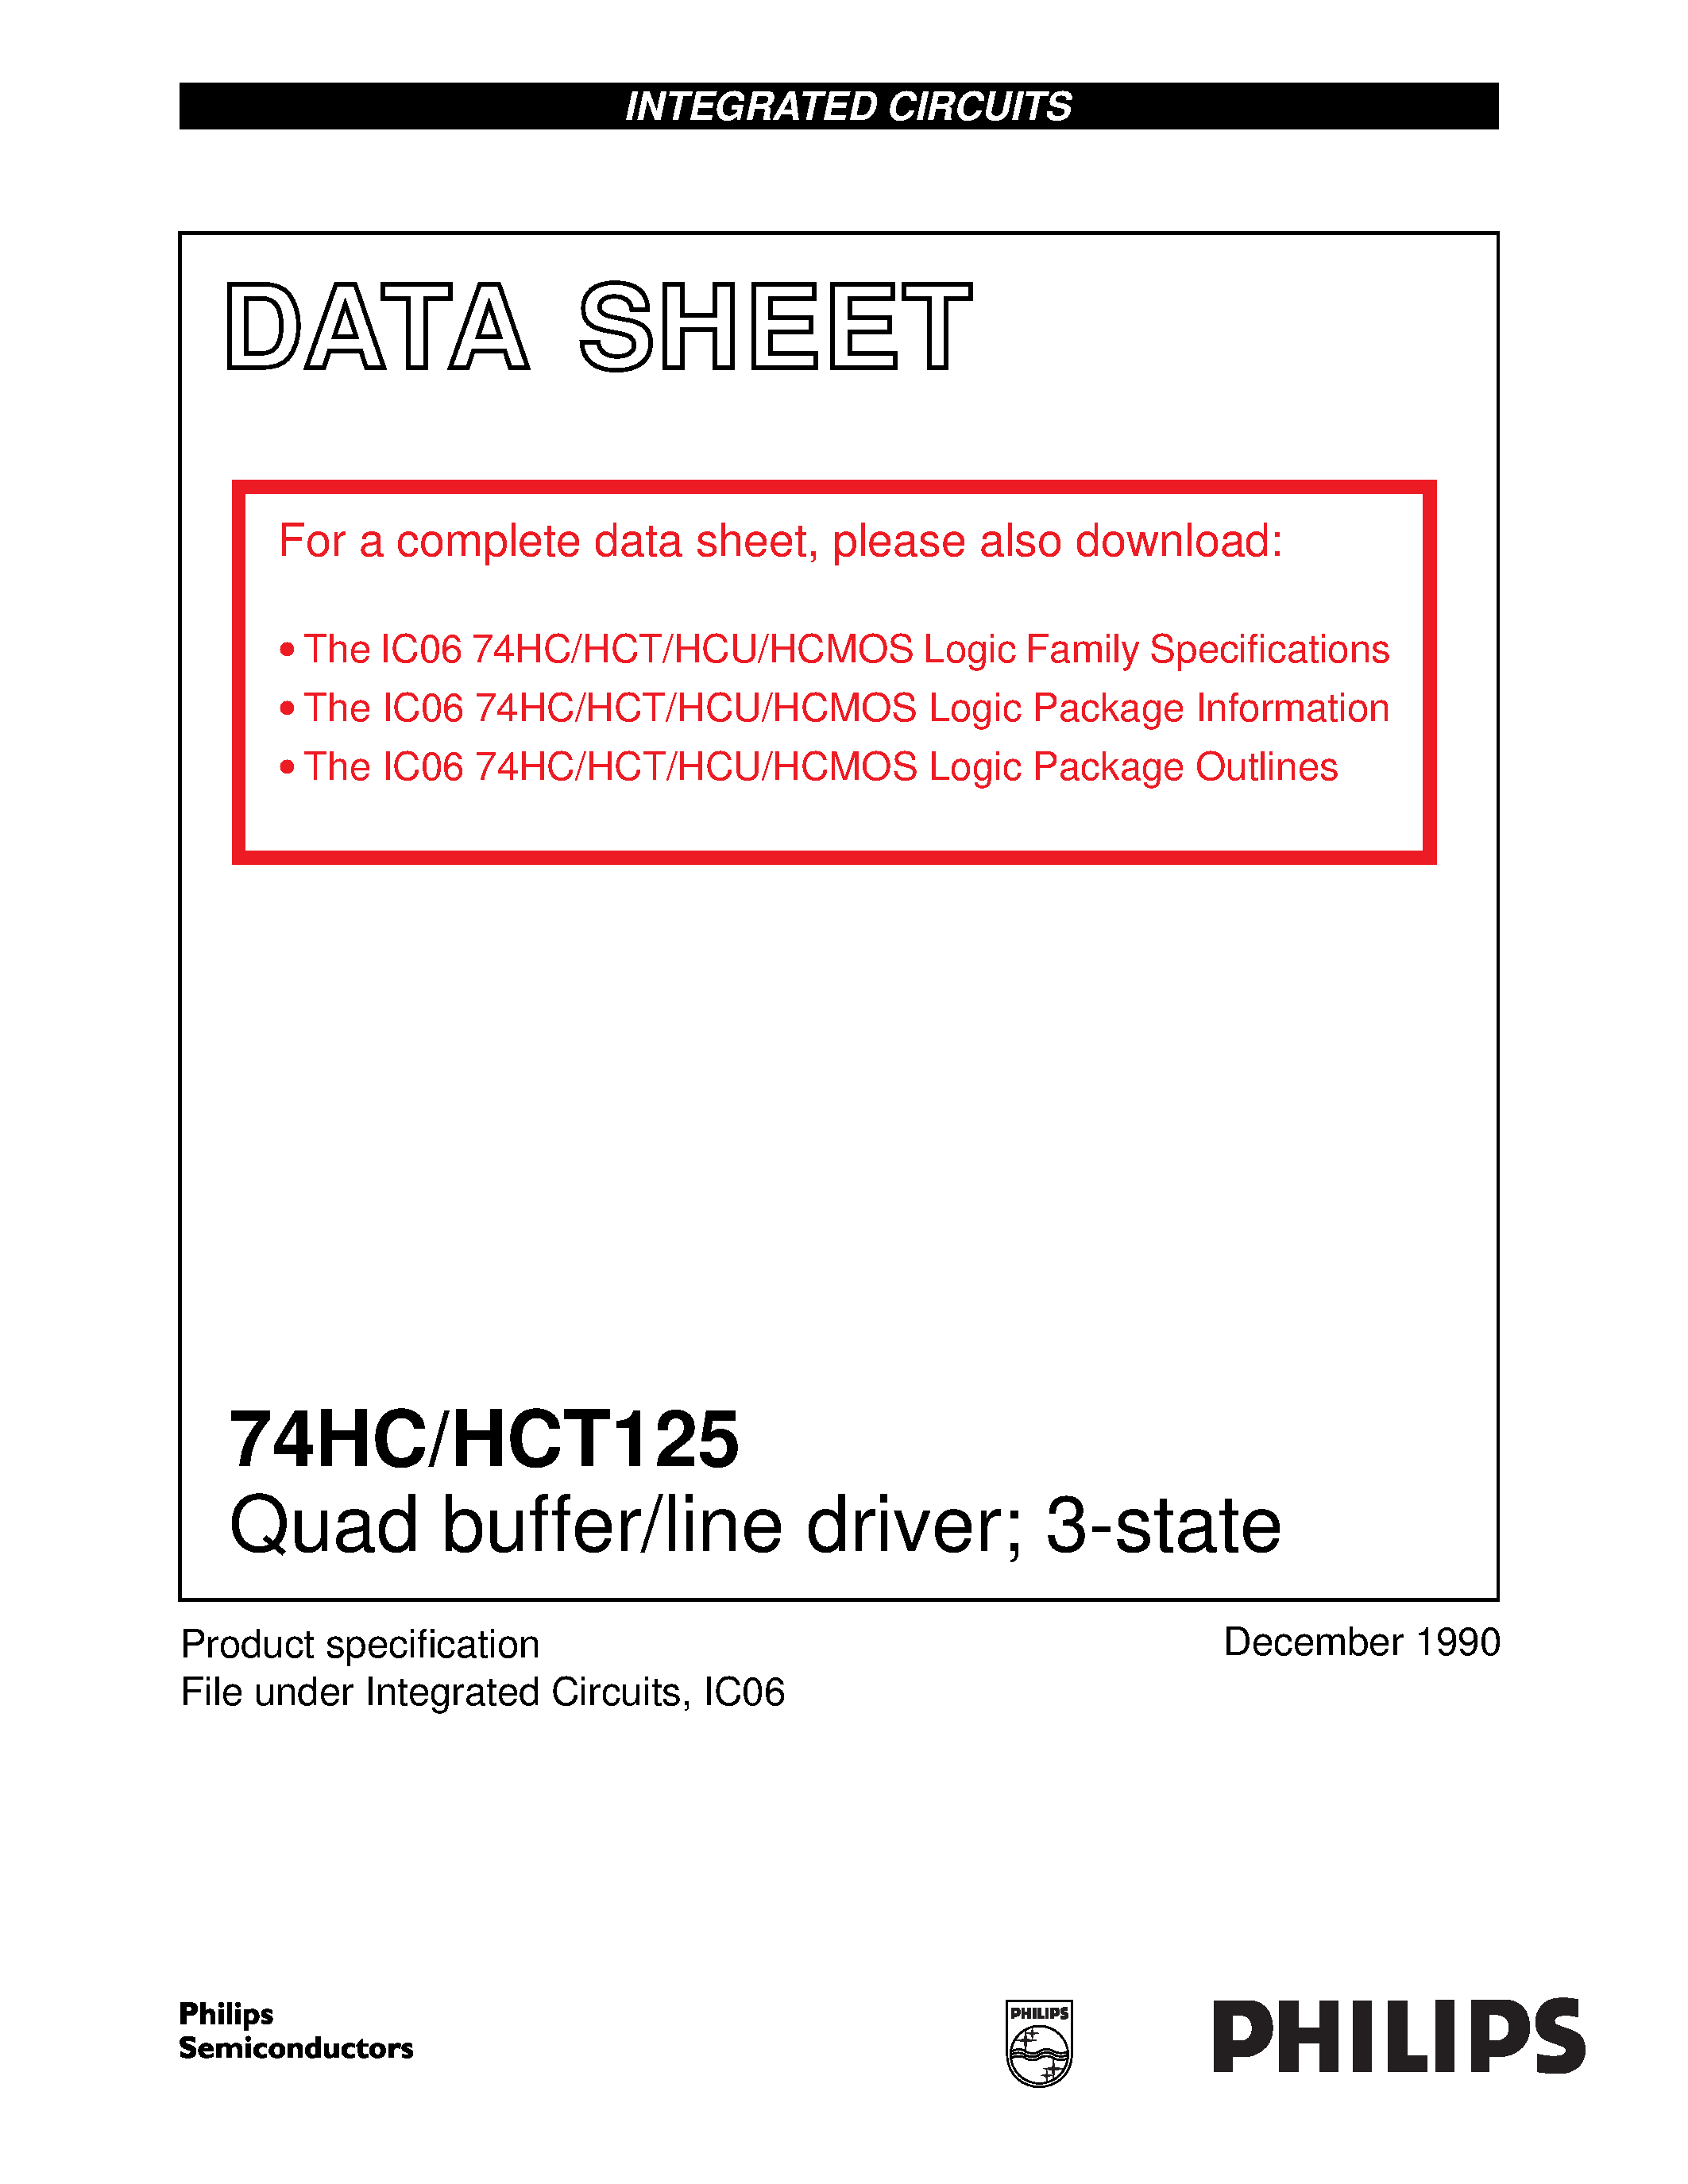 Даташит 74HC125 - Quad buffer/line driver 3-state страница 1